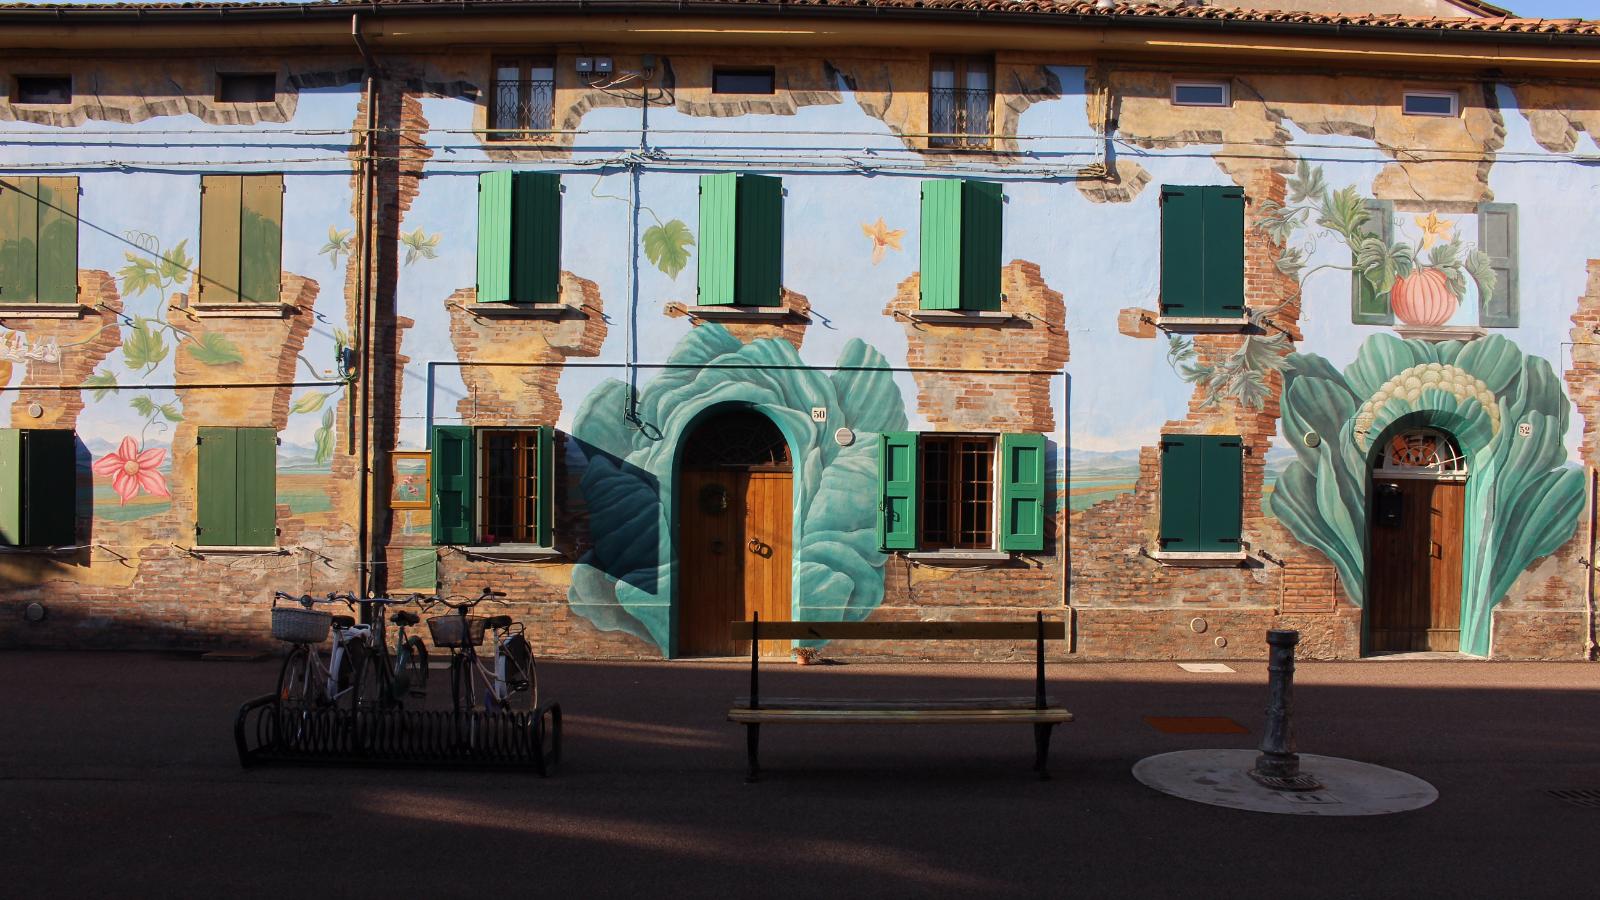 Piazzetta Betlemme, San Giovanni in Persiceto - foto dell'archivio del Comune di San Giovanni in Persiceto, 2021